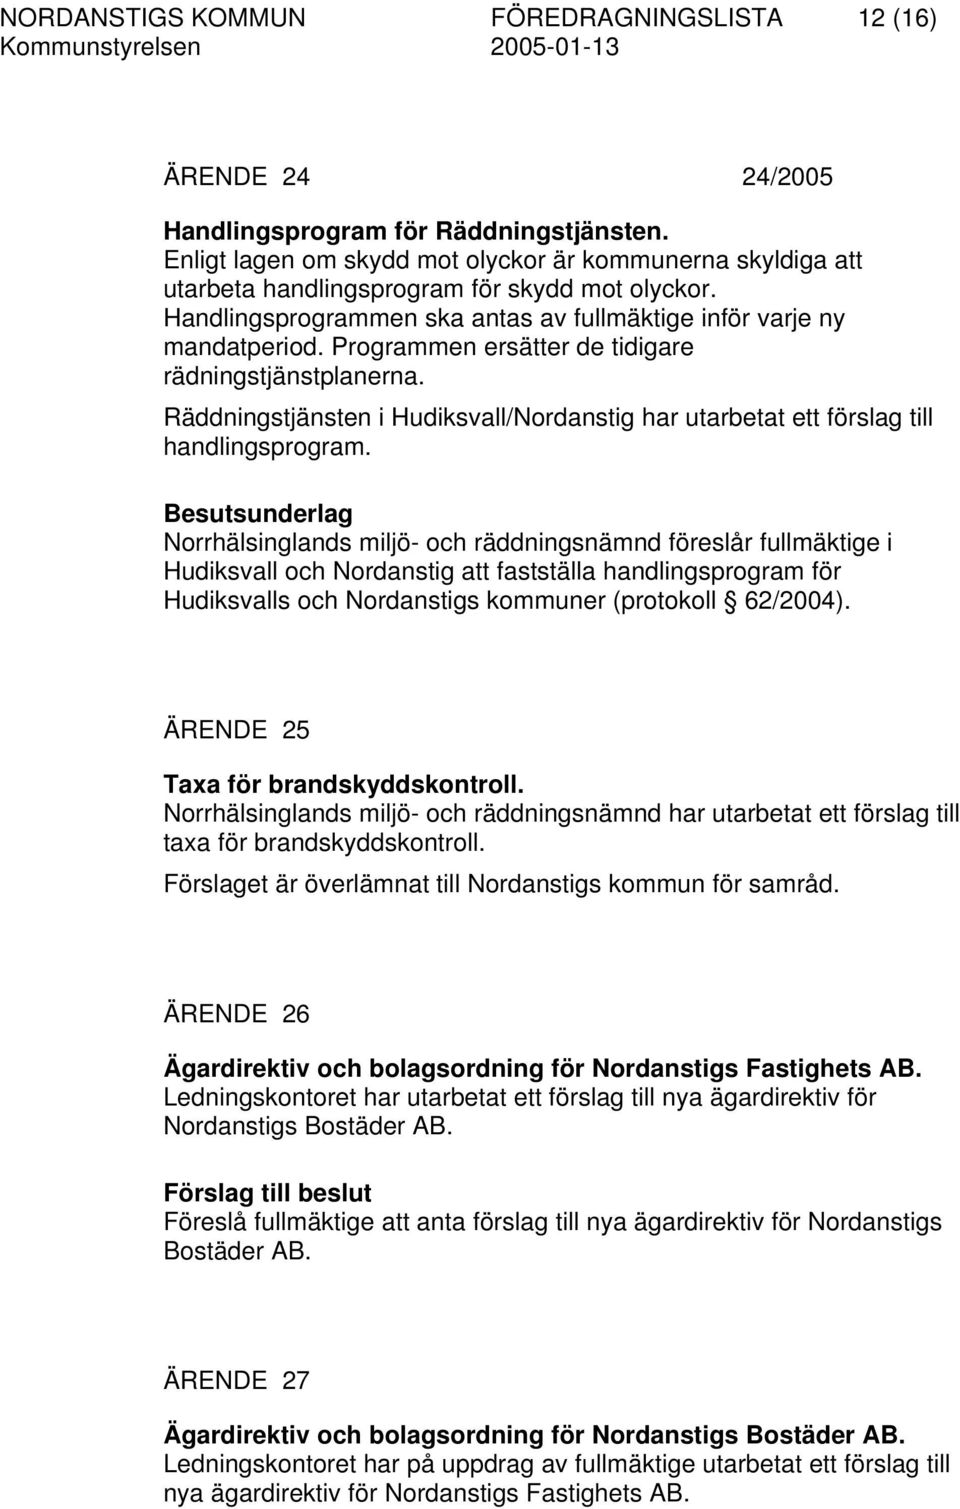 Programmen ersätter de tidigare rädningstjänstplanerna. Räddningstjänsten i Hudiksvall/Nordanstig har utarbetat ett förslag till handlingsprogram.